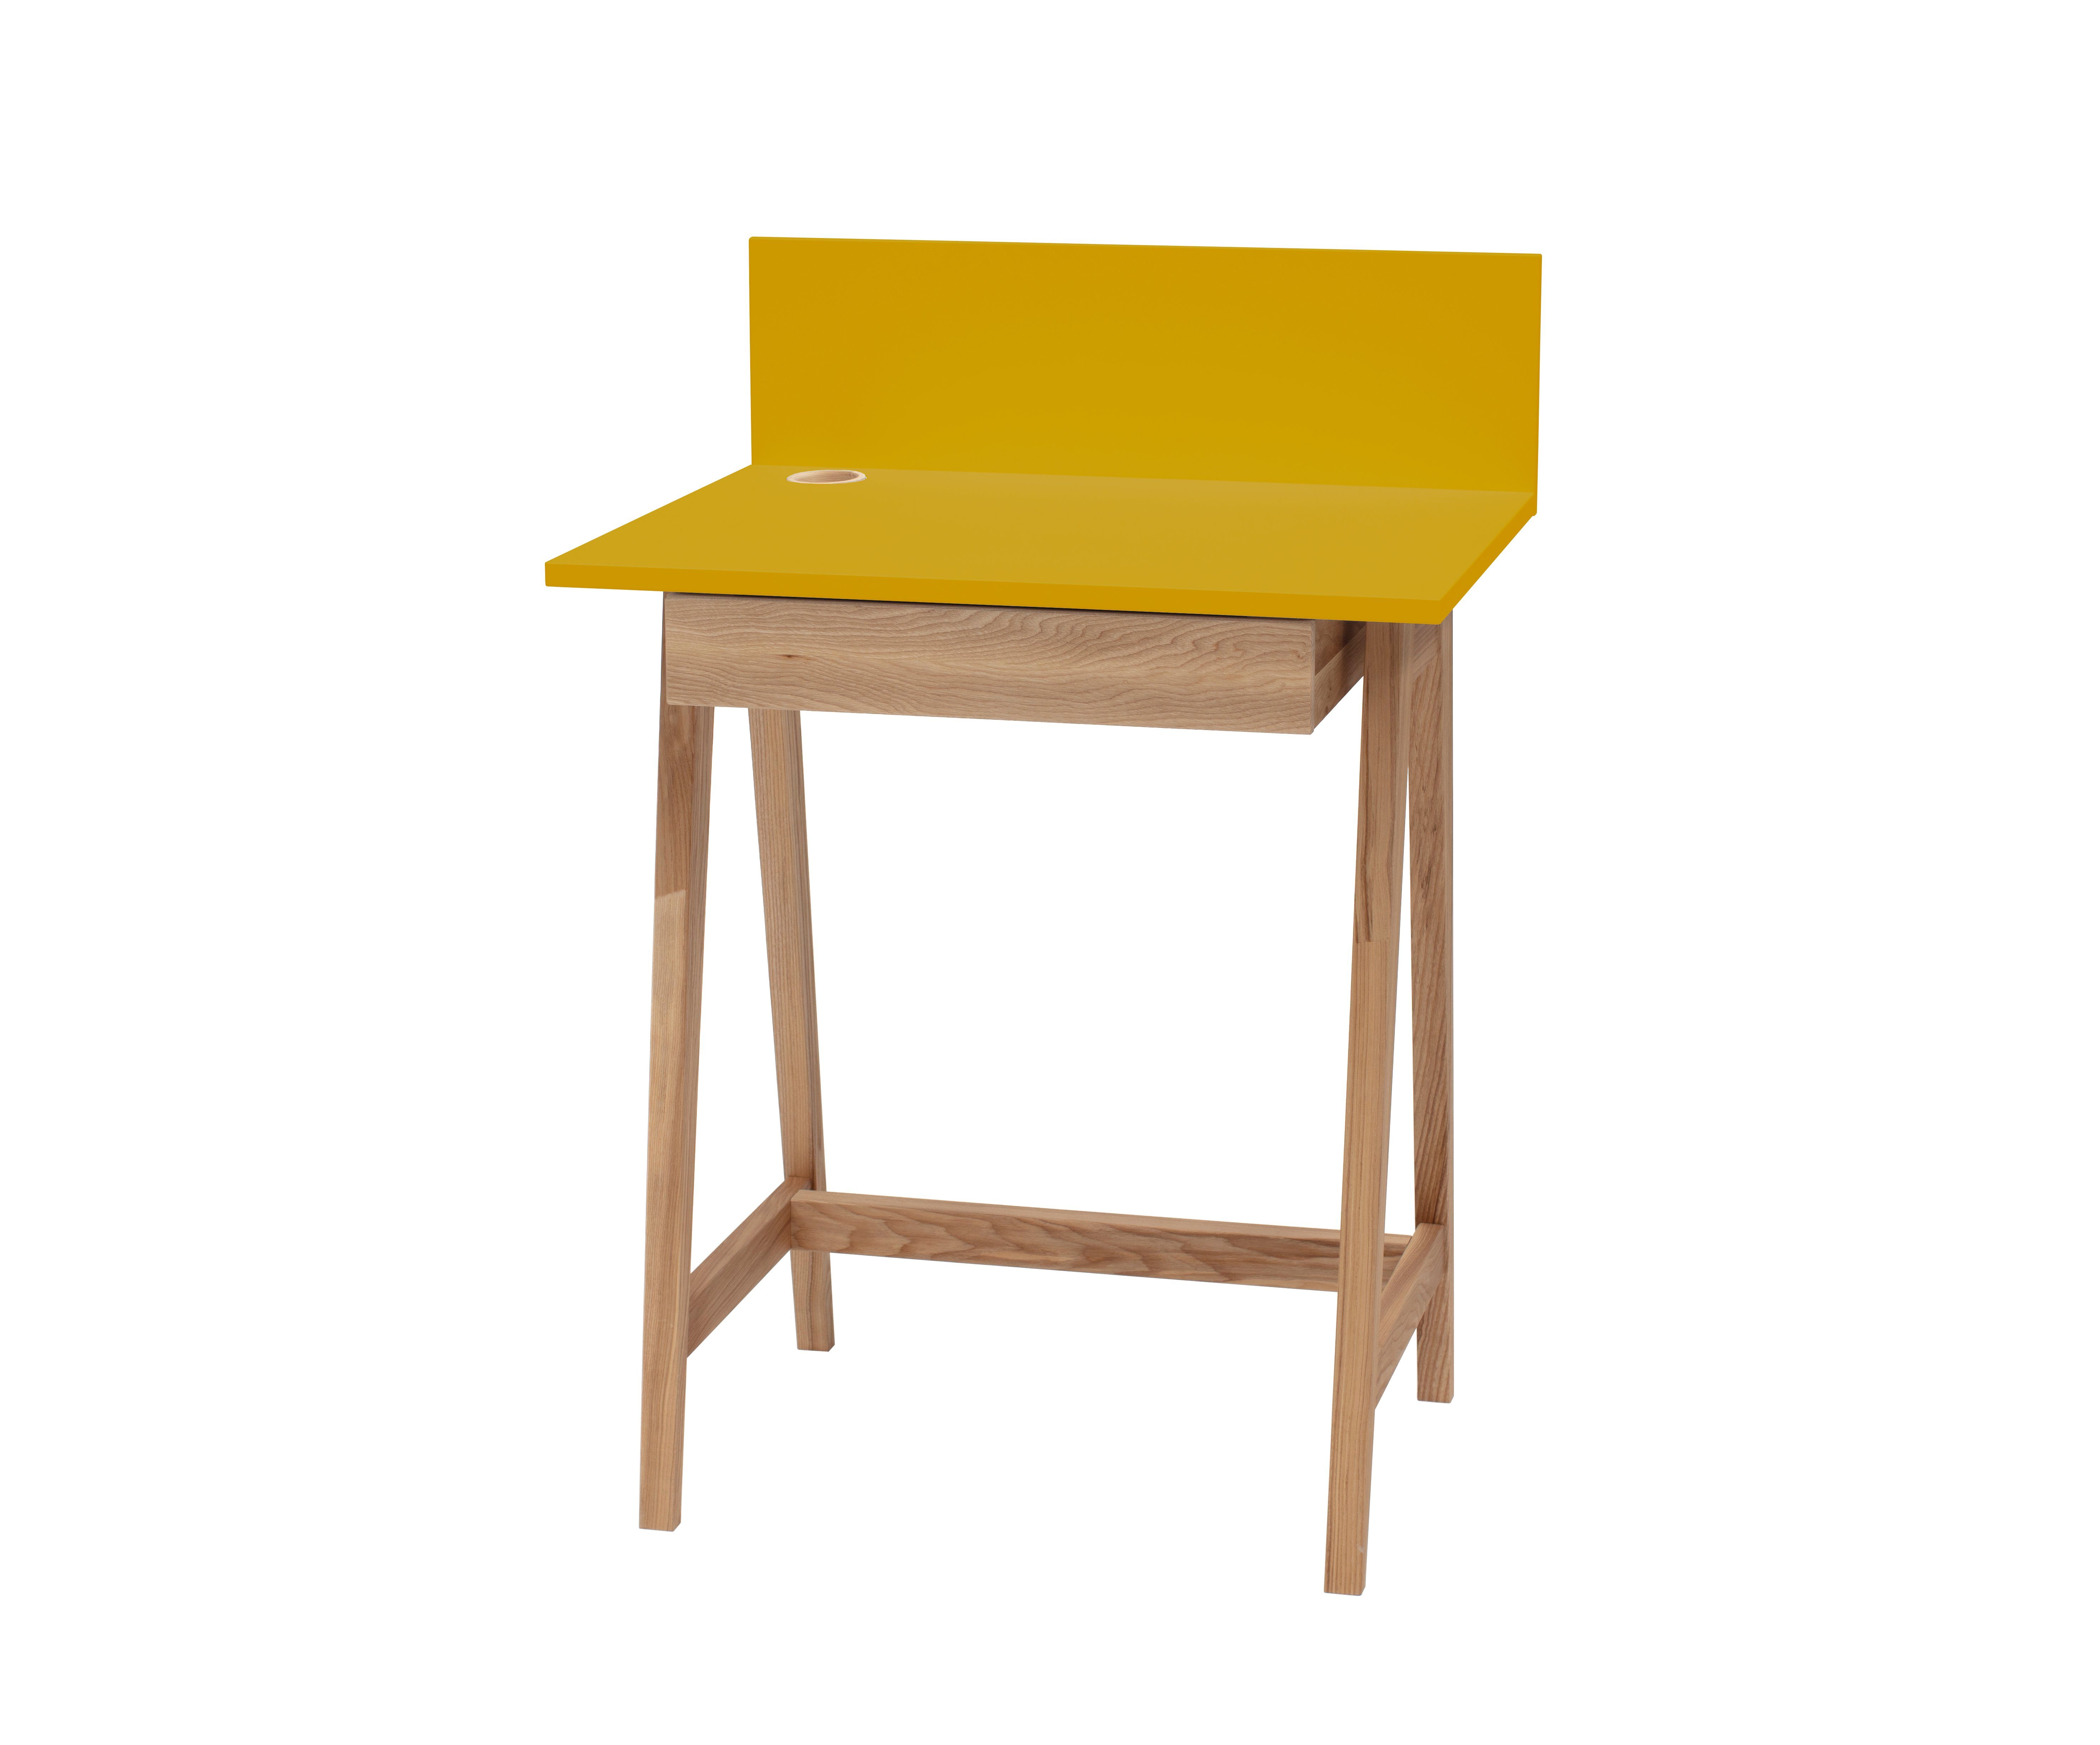 Siblo Schreibtisch Kinderschreibtisch Luke mit Schublade - Bunter Schreibtisch - minimalistisches Design - Kinderzimmer - MDF-Platte - Eschenholz (Kinderschreibtisch Luke mit Schublade) Gelb